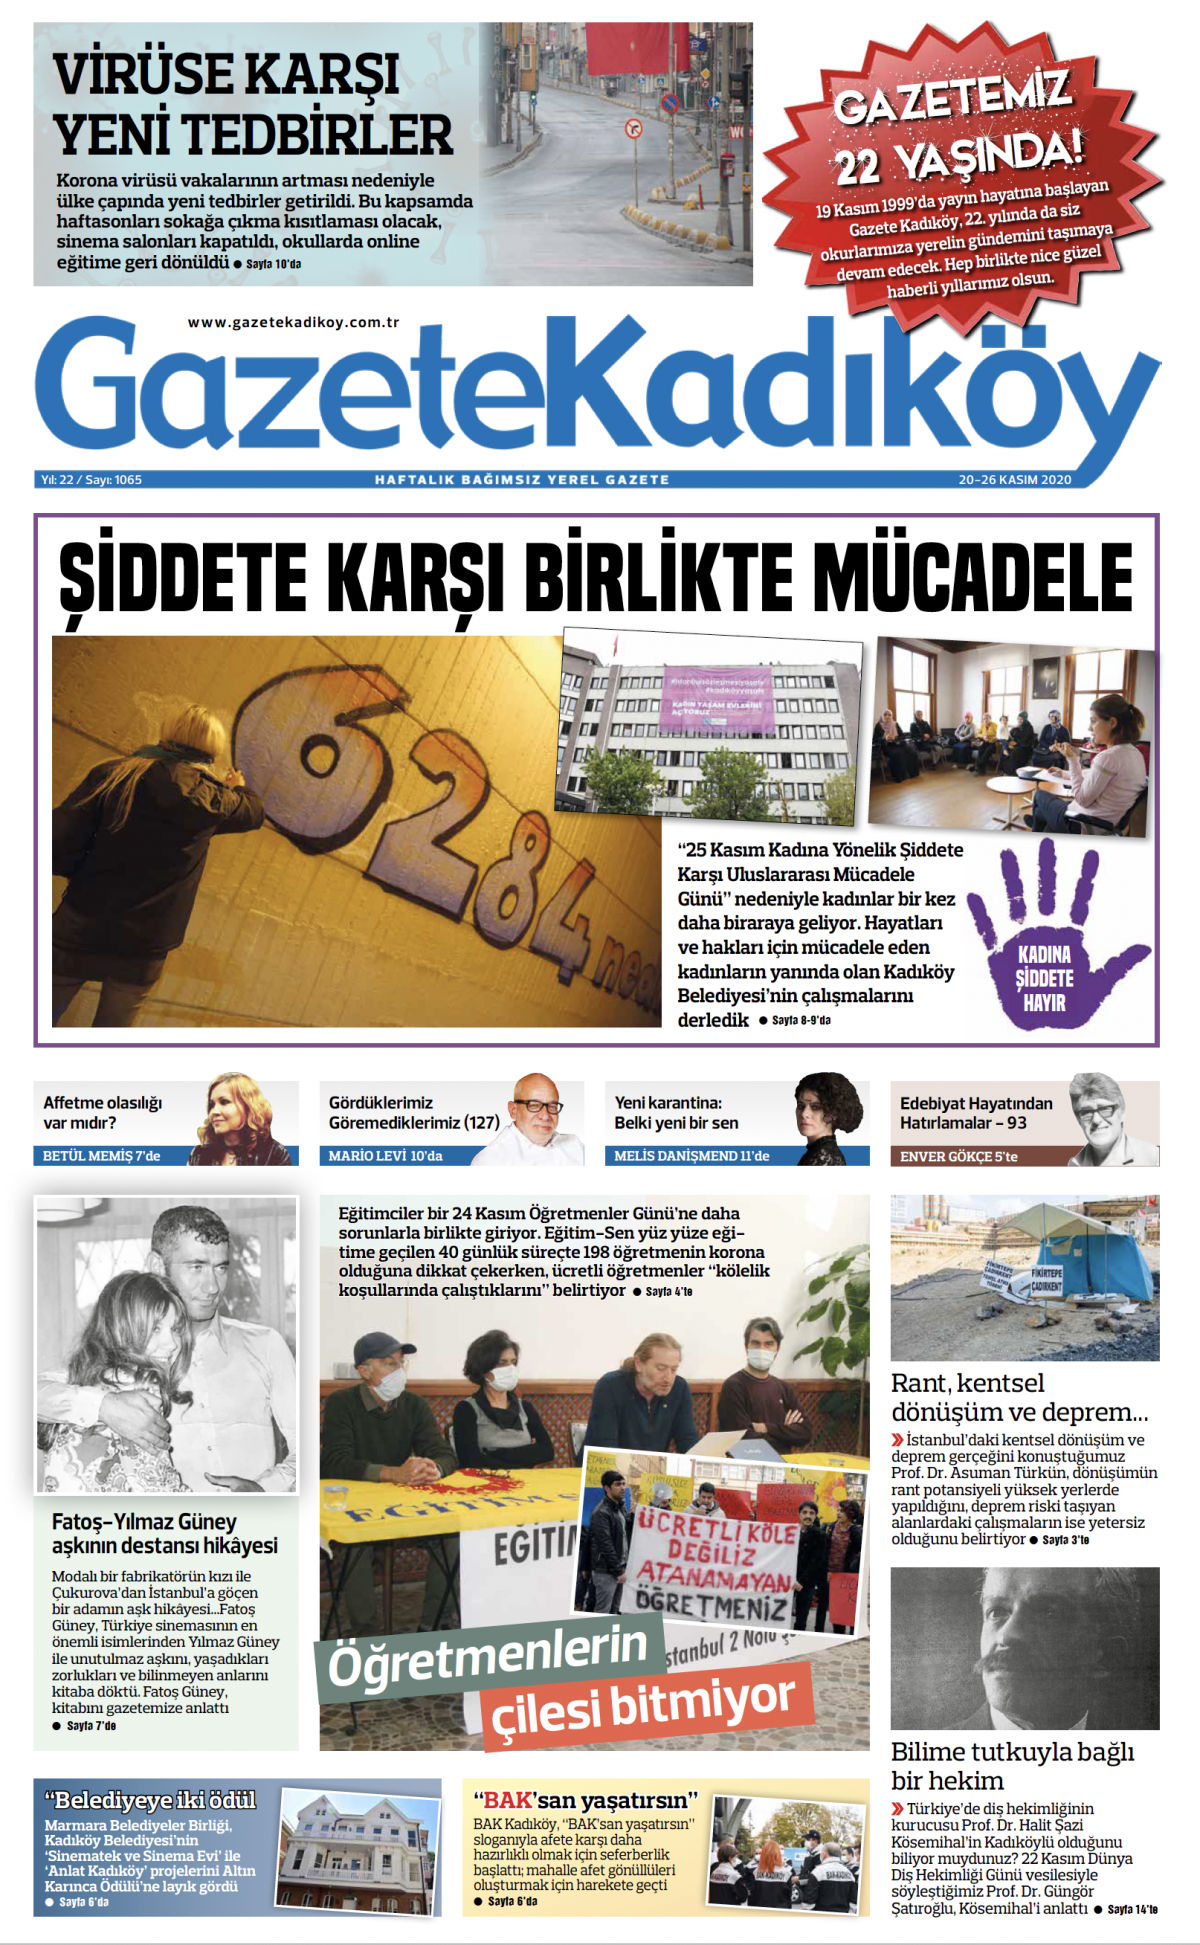 Gazete Kadıköy - 1065.Sayı